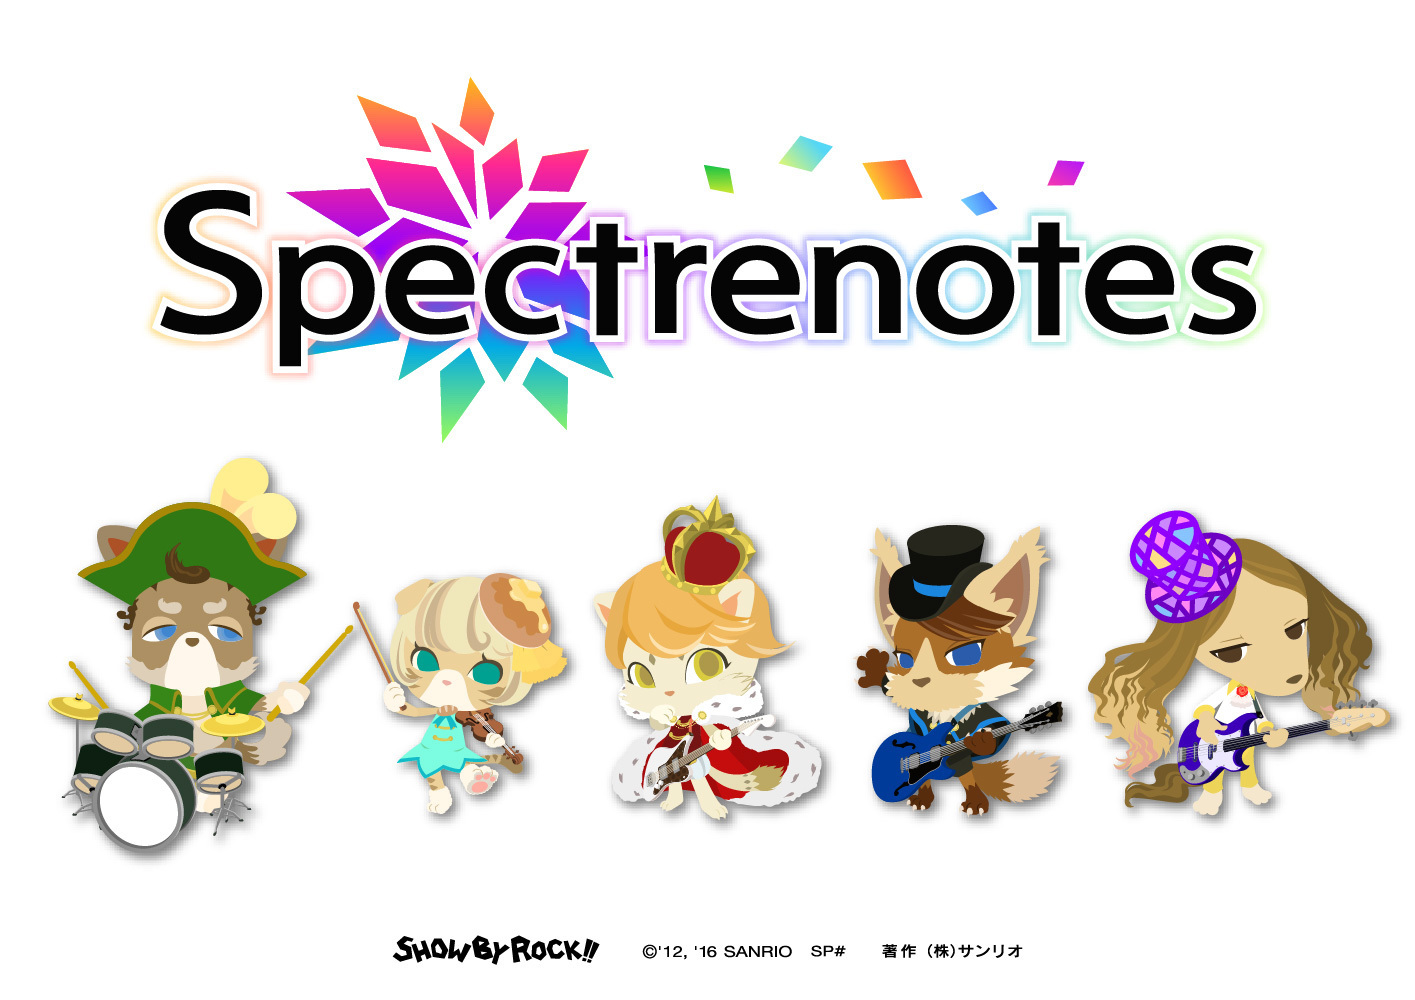 Spectrenotes